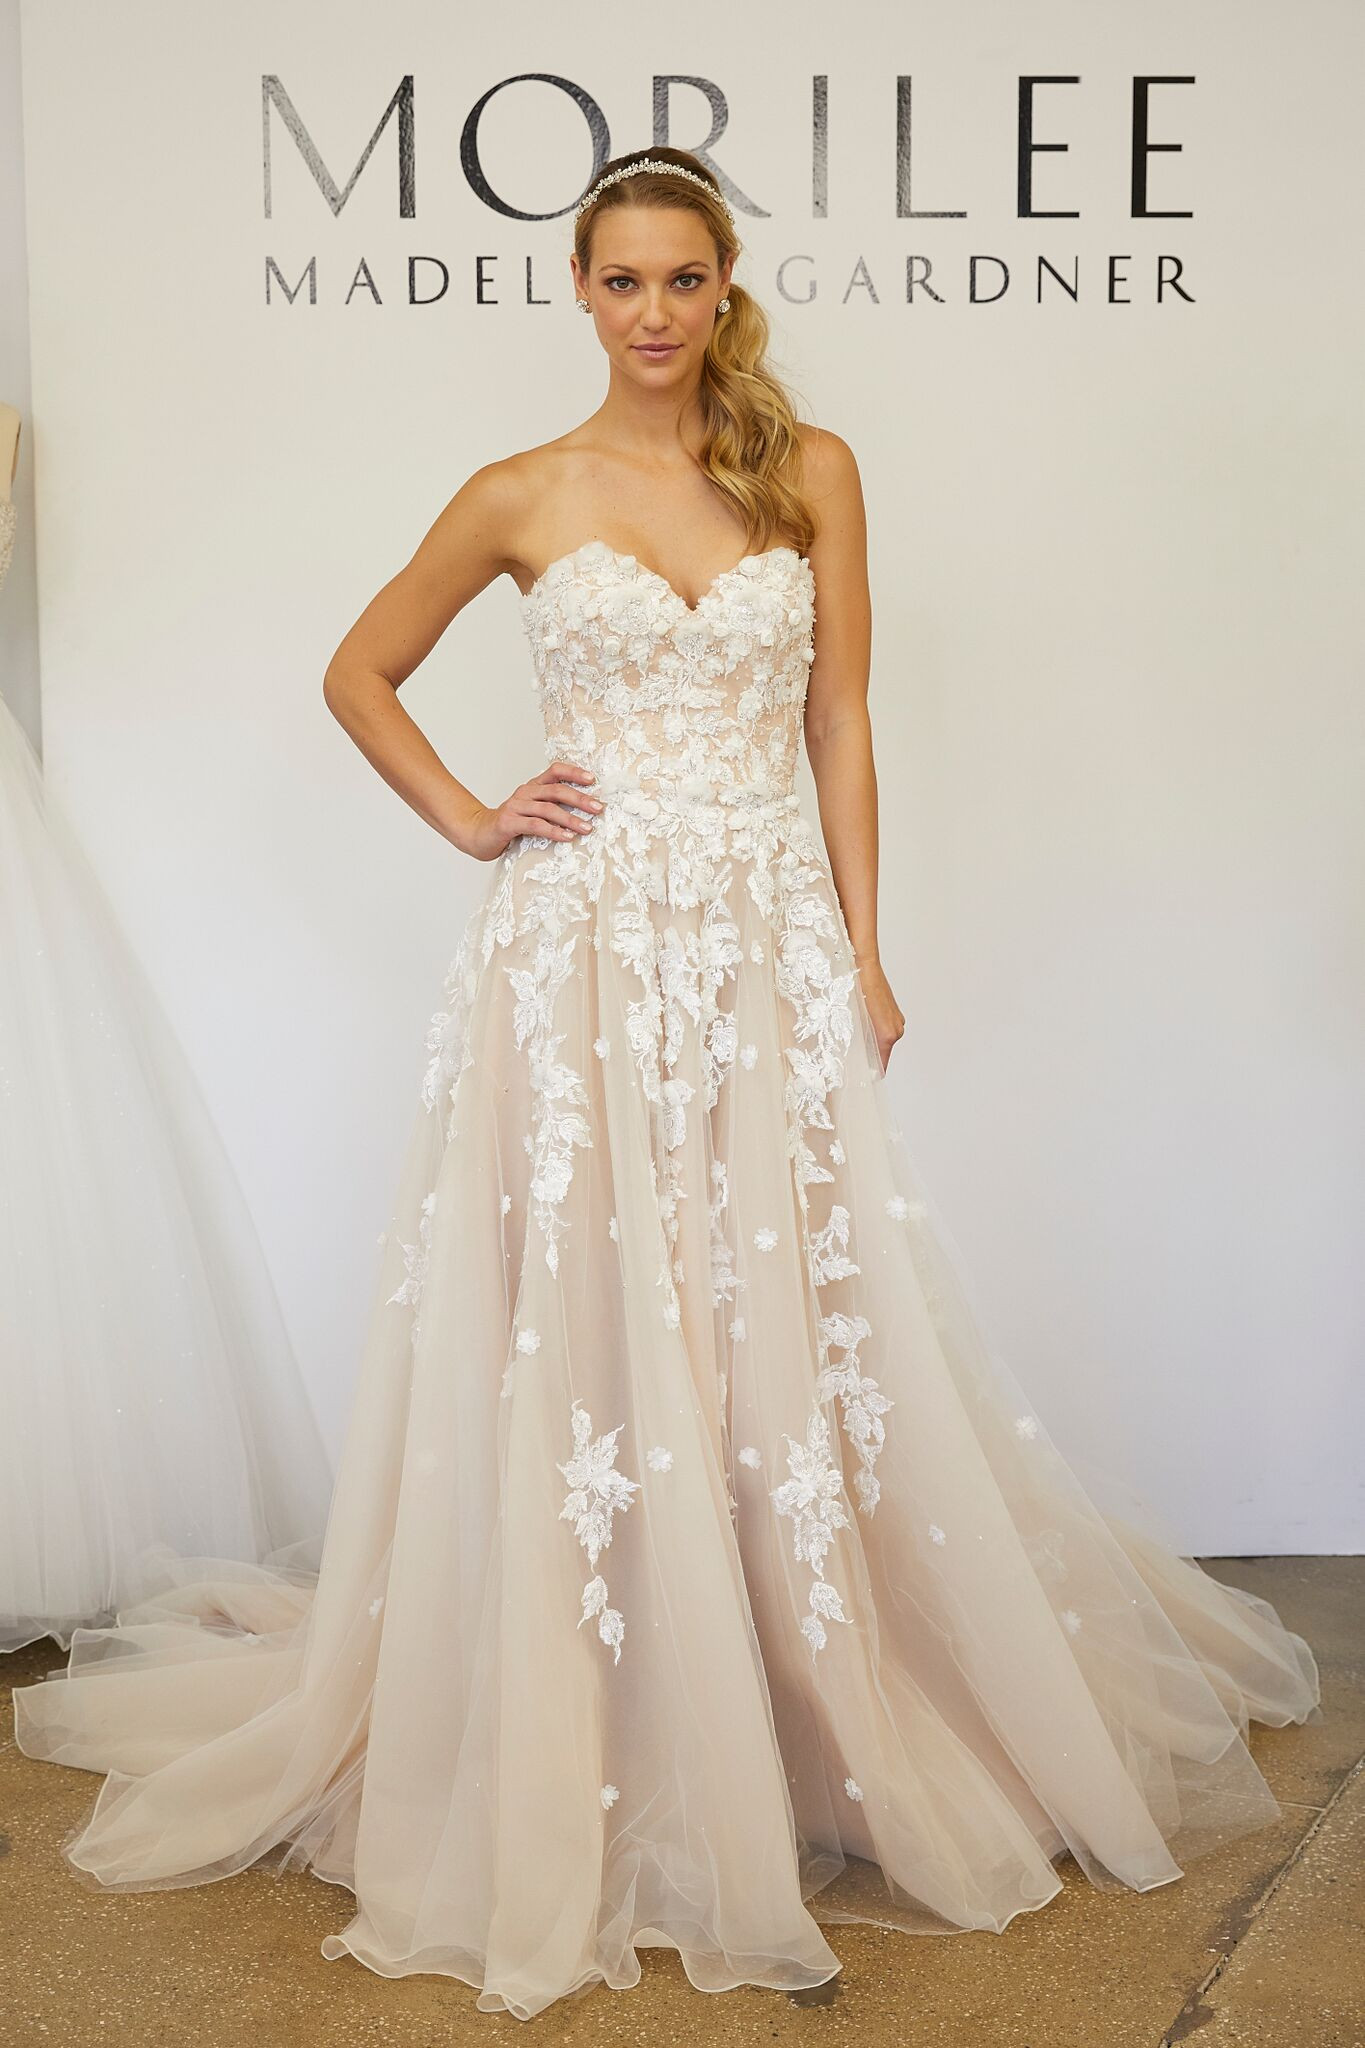 Wedding Gown Designers List
 Wedding Dress Designers Favorite Necklines